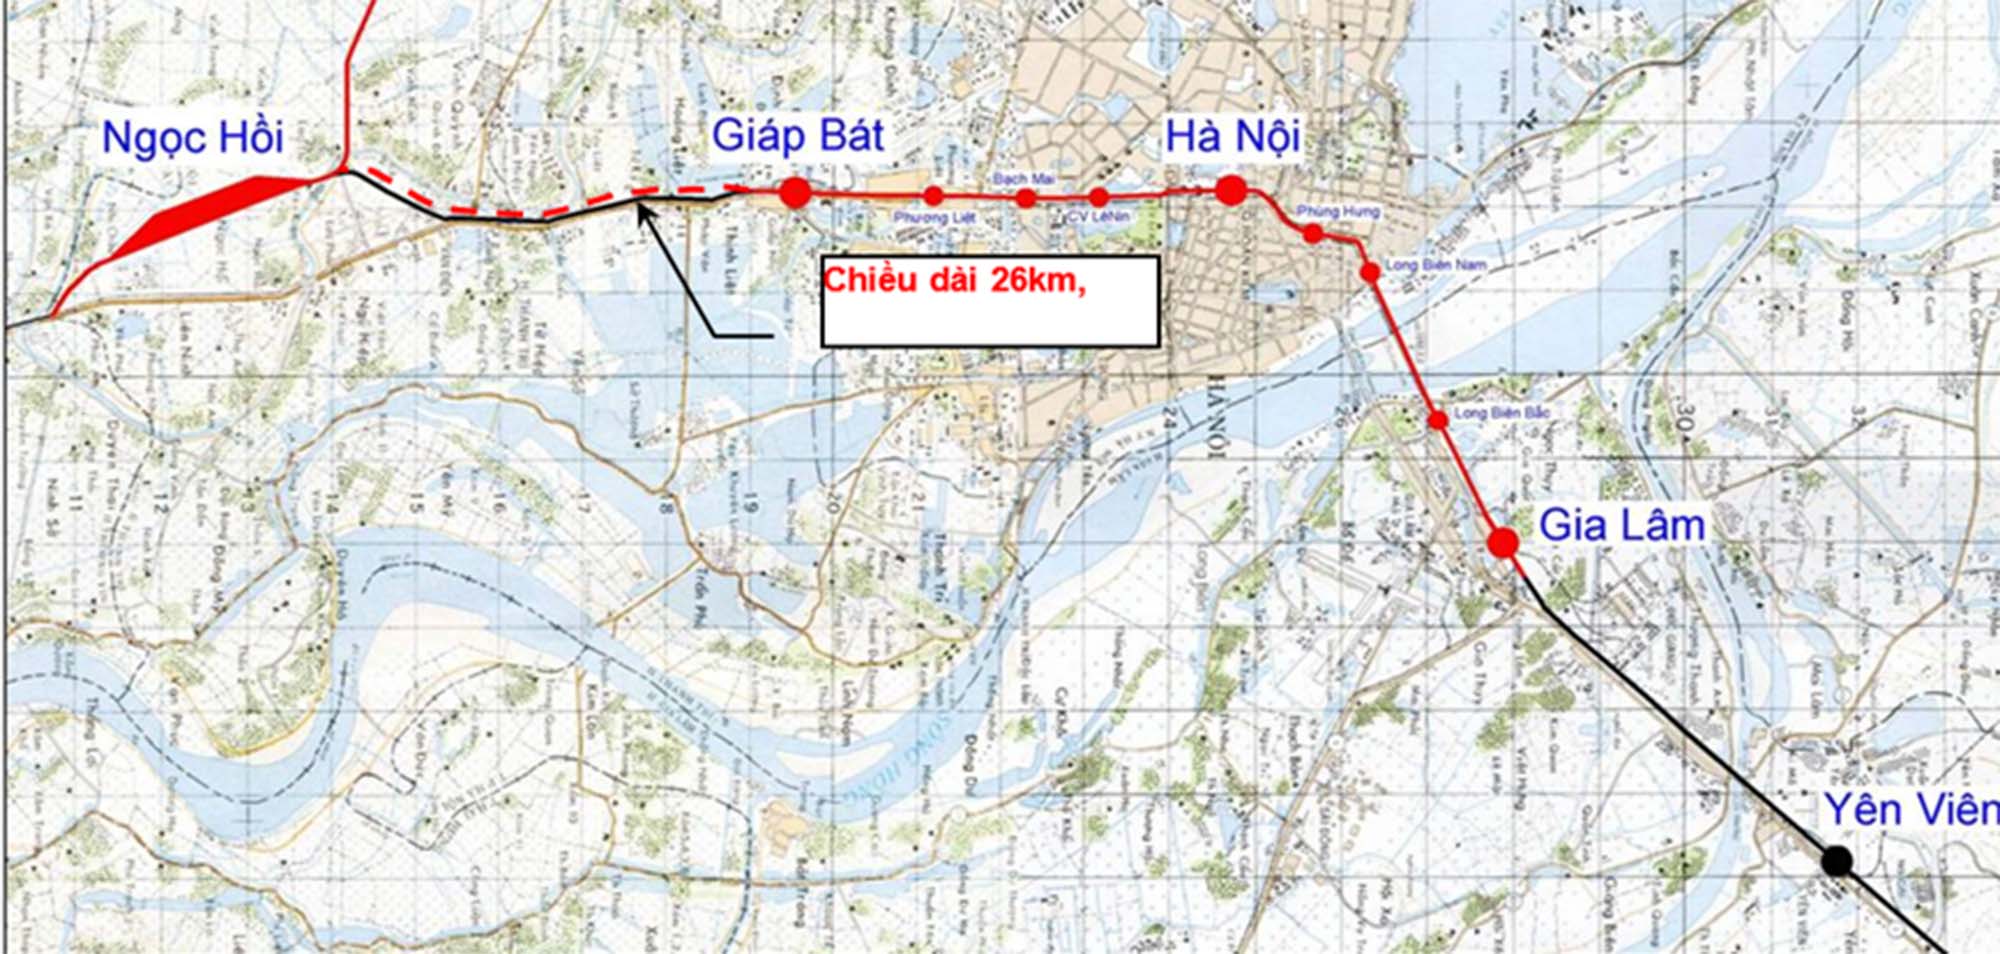 Hà Nội: Toàn cảnh khu đất sẽ được xây dựng tổ hợp ga 19.000 tỷ, là nơi dừng chân của đường sắt tốc độ cao- Ảnh 1.